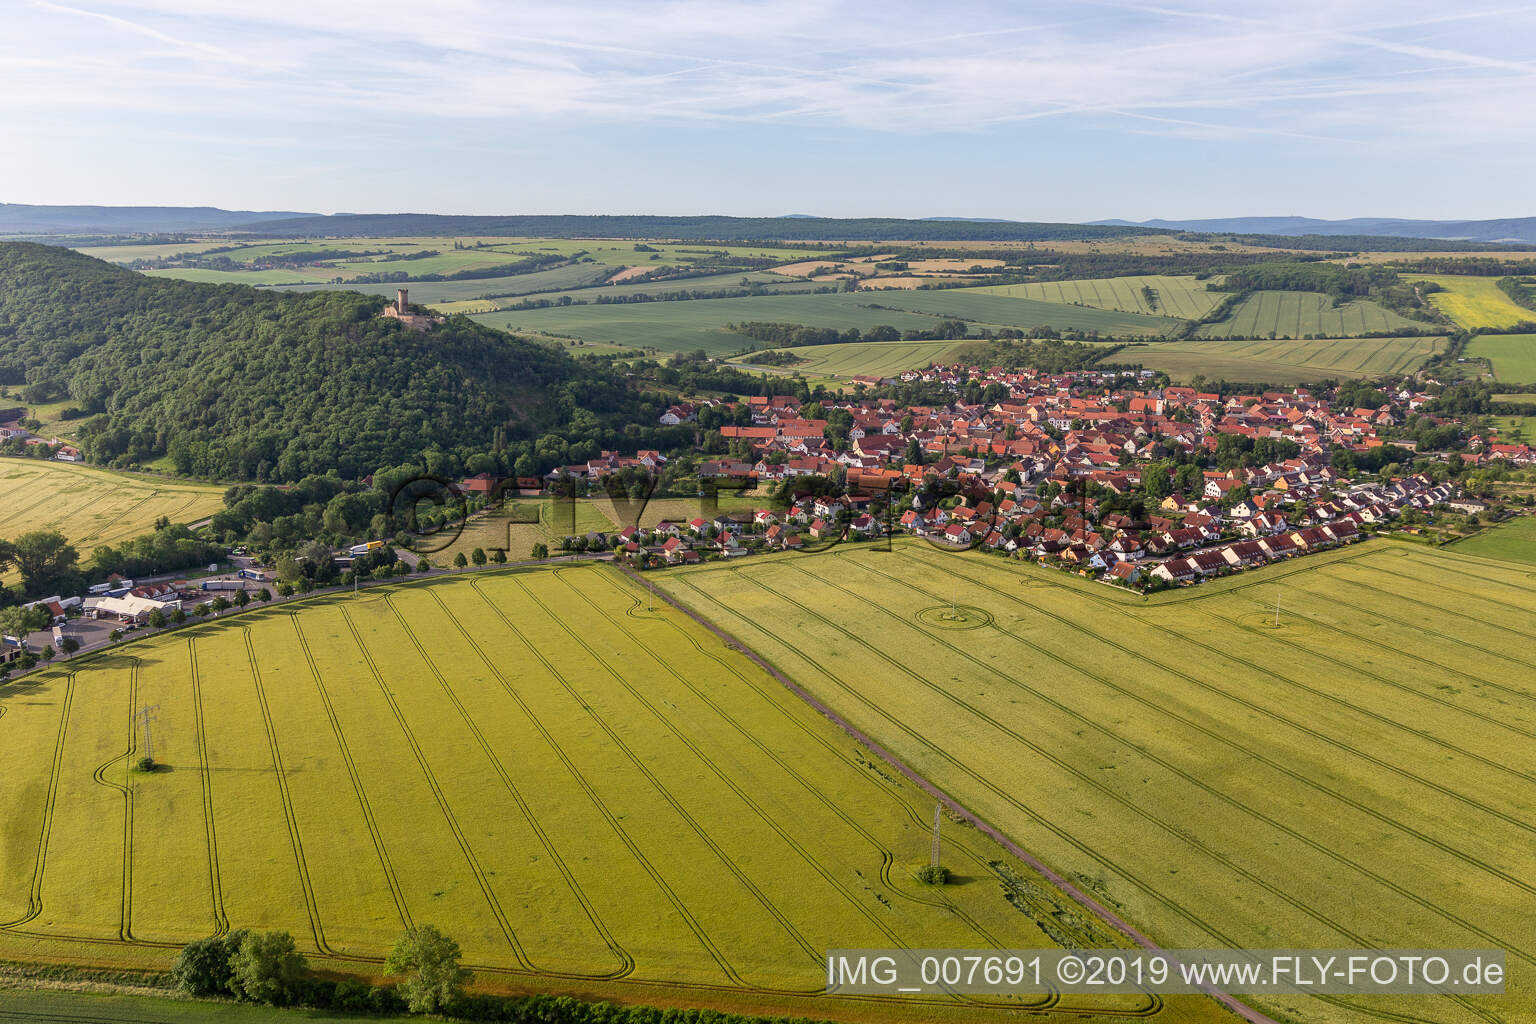 Vue aérienne de Vue sur la commune en bordure de champs agricoles et de zones agricoles à Mühlberg dans le département Thuringe, Allemagne